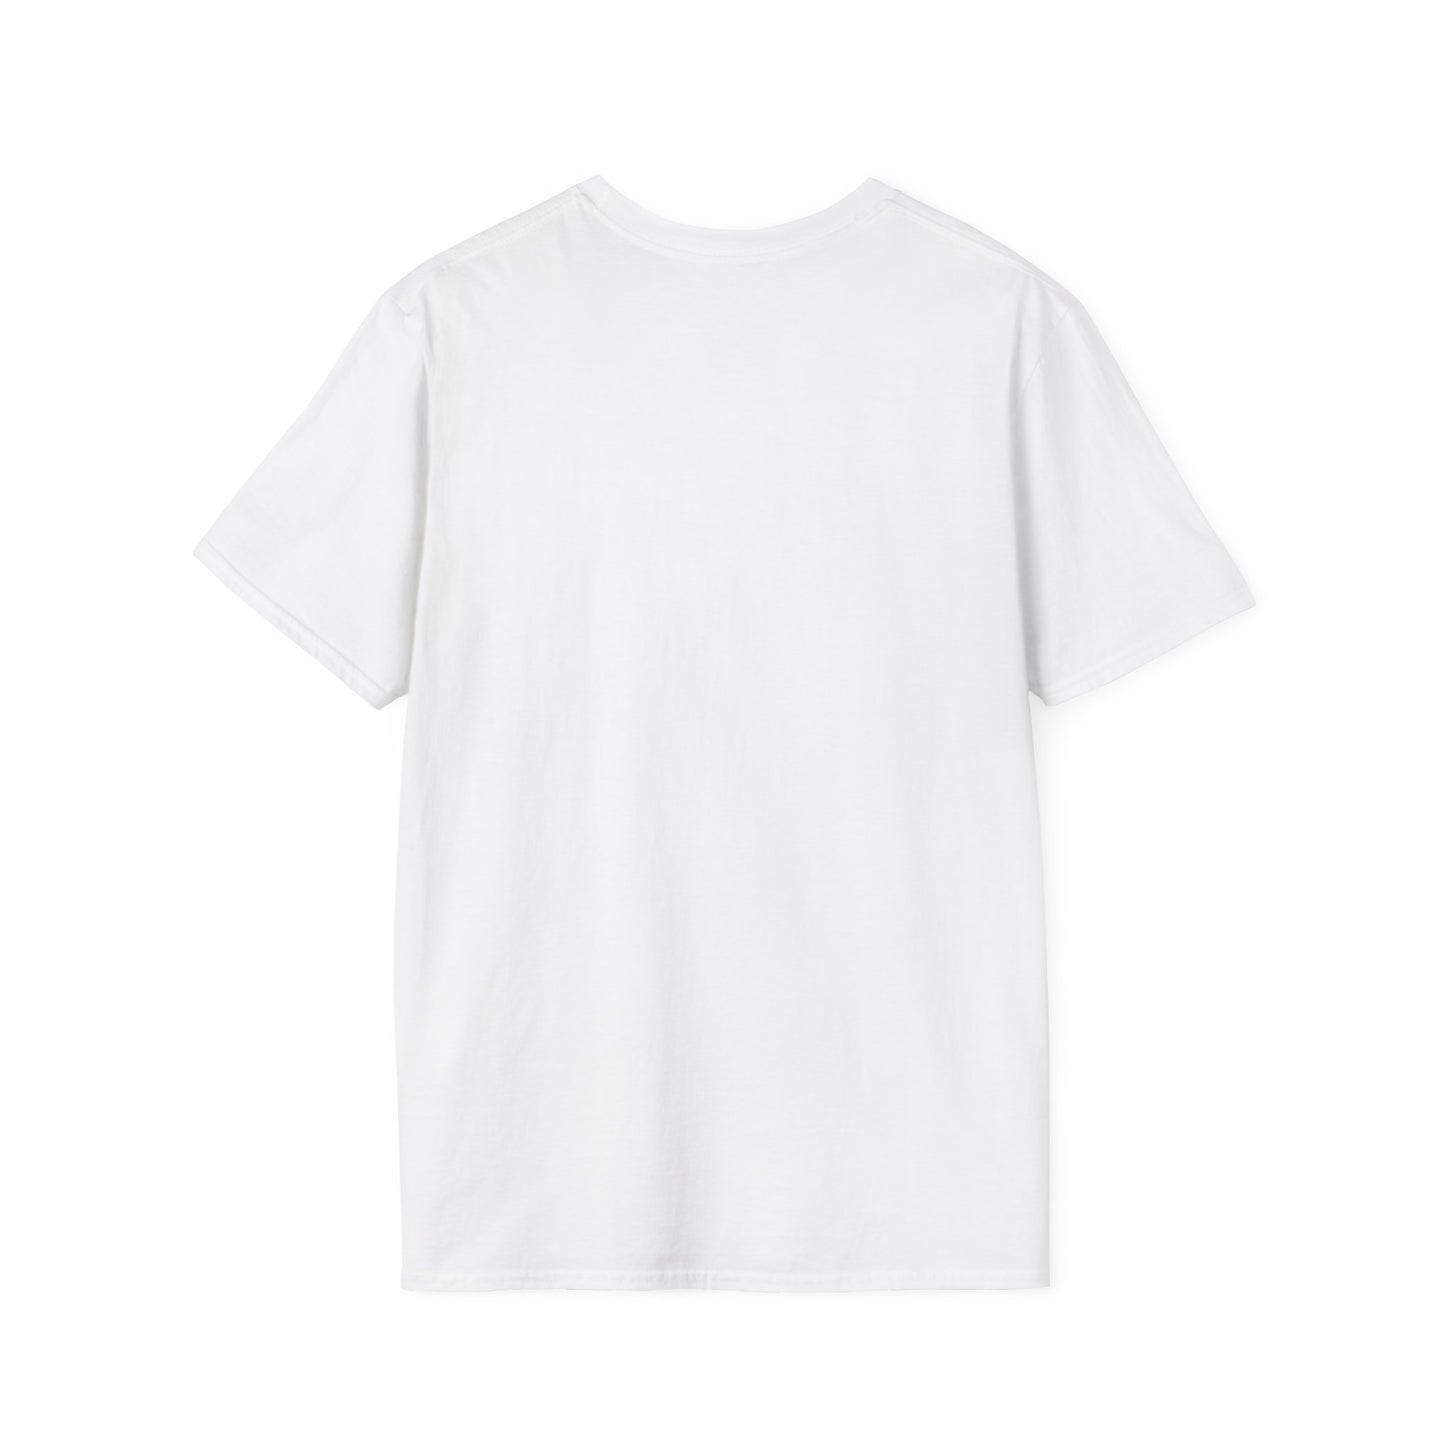 Softstyle Assquatch T-Shirt